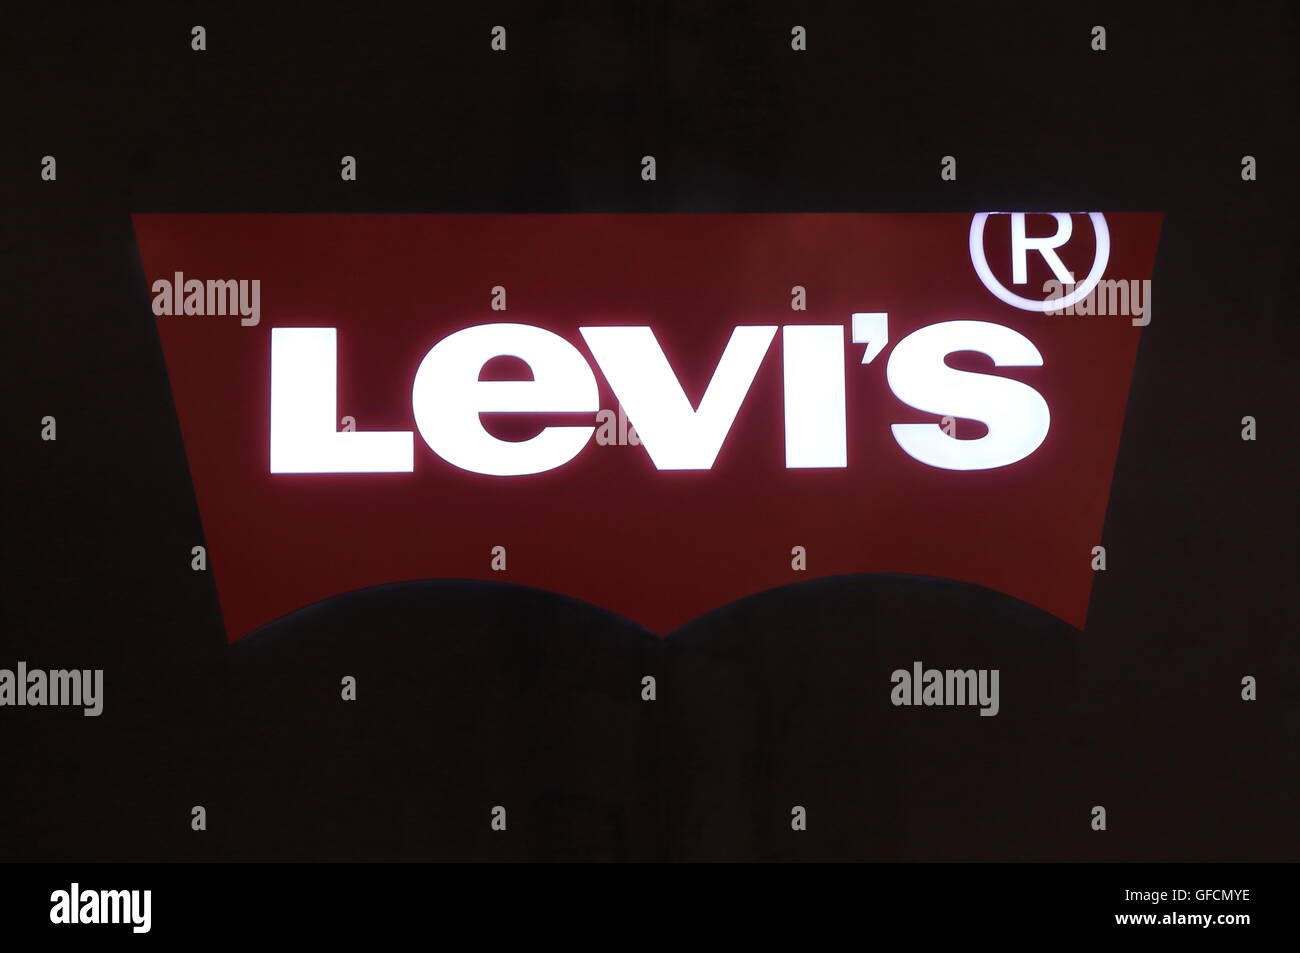 Levis logo Banque de photographies et d'images à haute résolution - Alamy